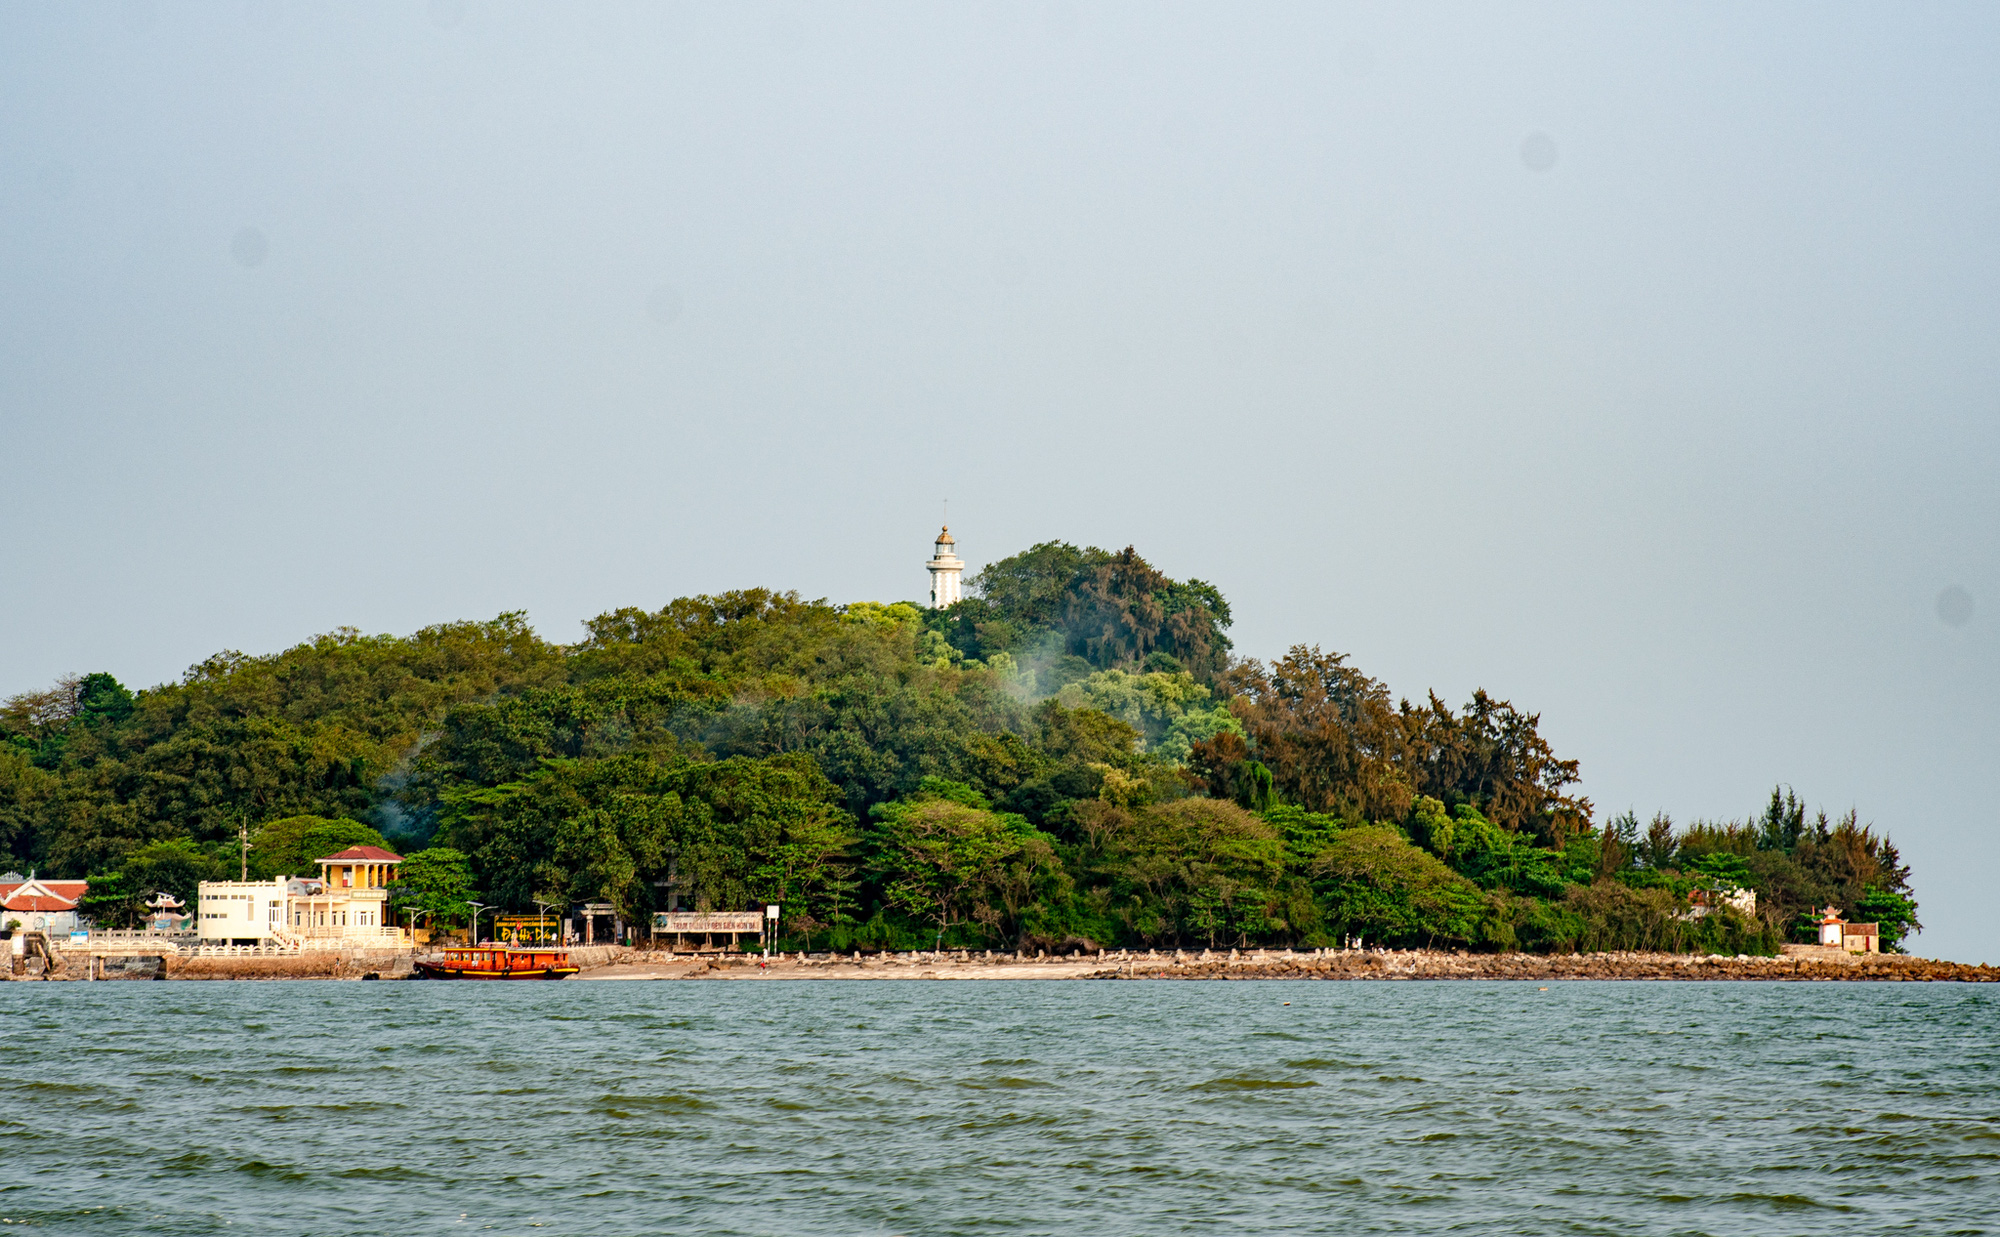  Khám phá đảo bé hạt tiêu có hải đăng cổ nhất Việt Nam, 124 năm vững vàng trước sóng gió - Ảnh 13.